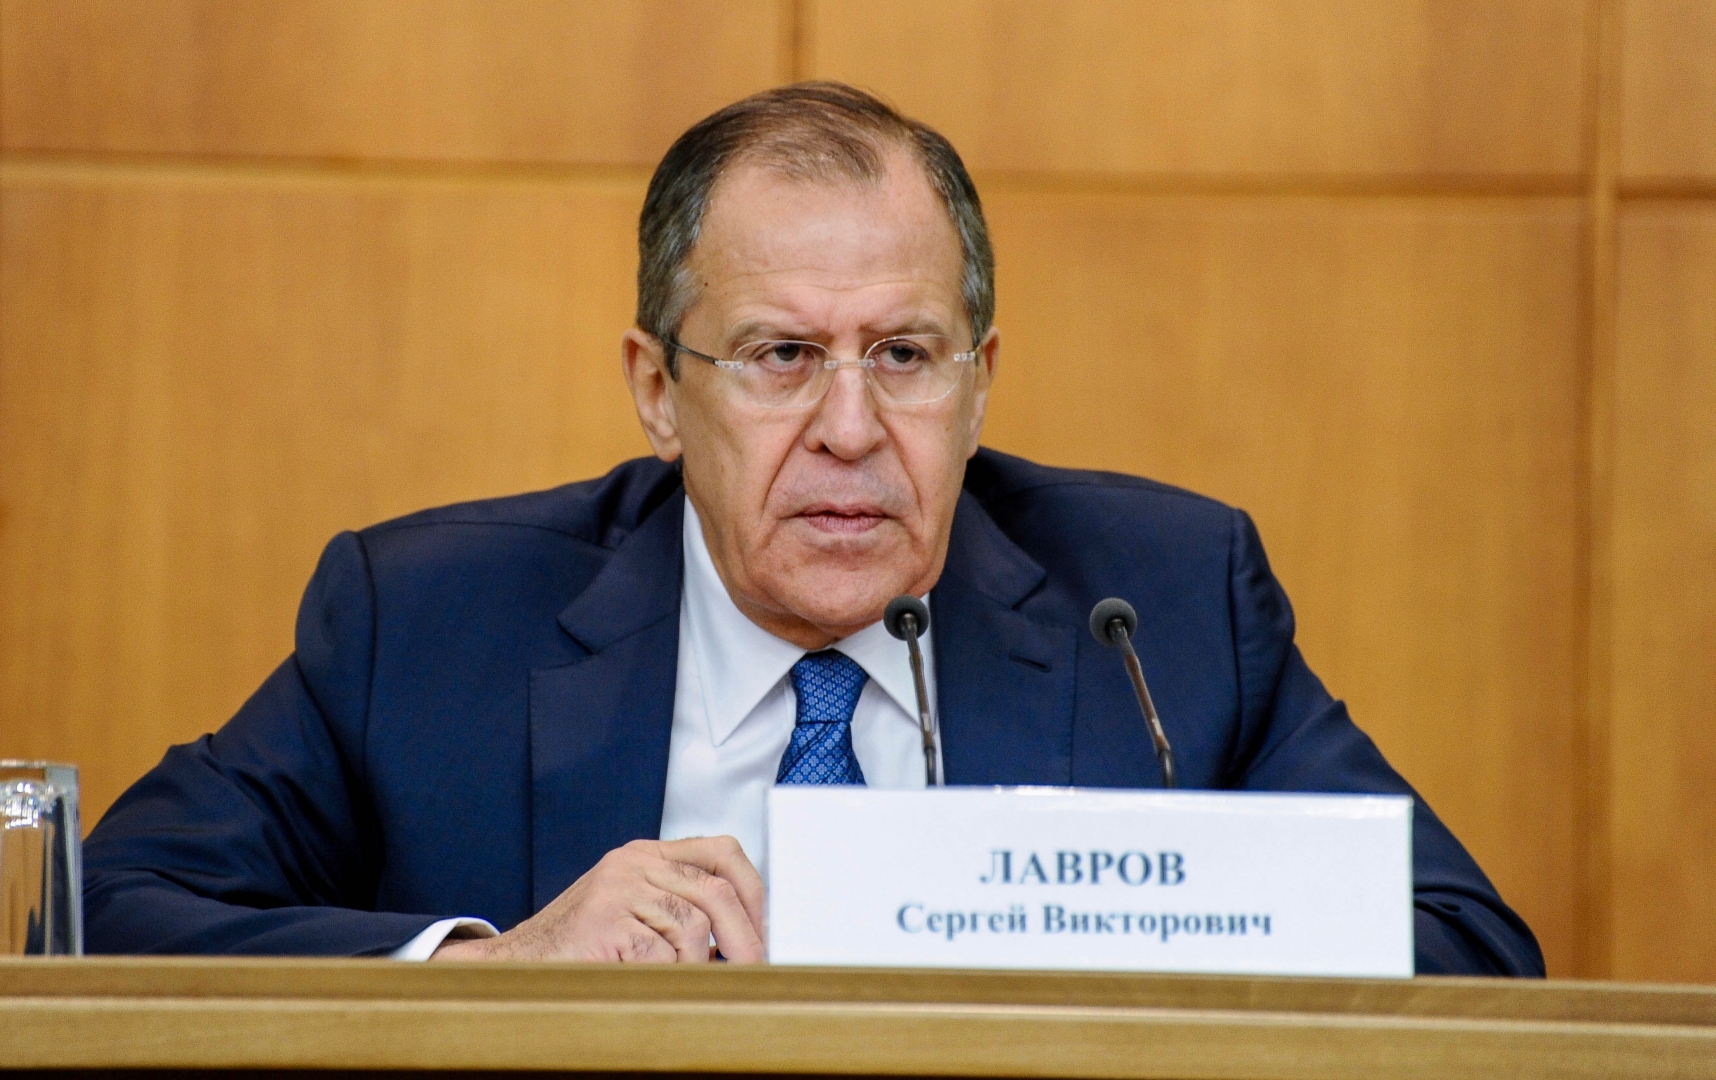 Внешние силы стремятся подорвать связи России и Казахстана – Лавров